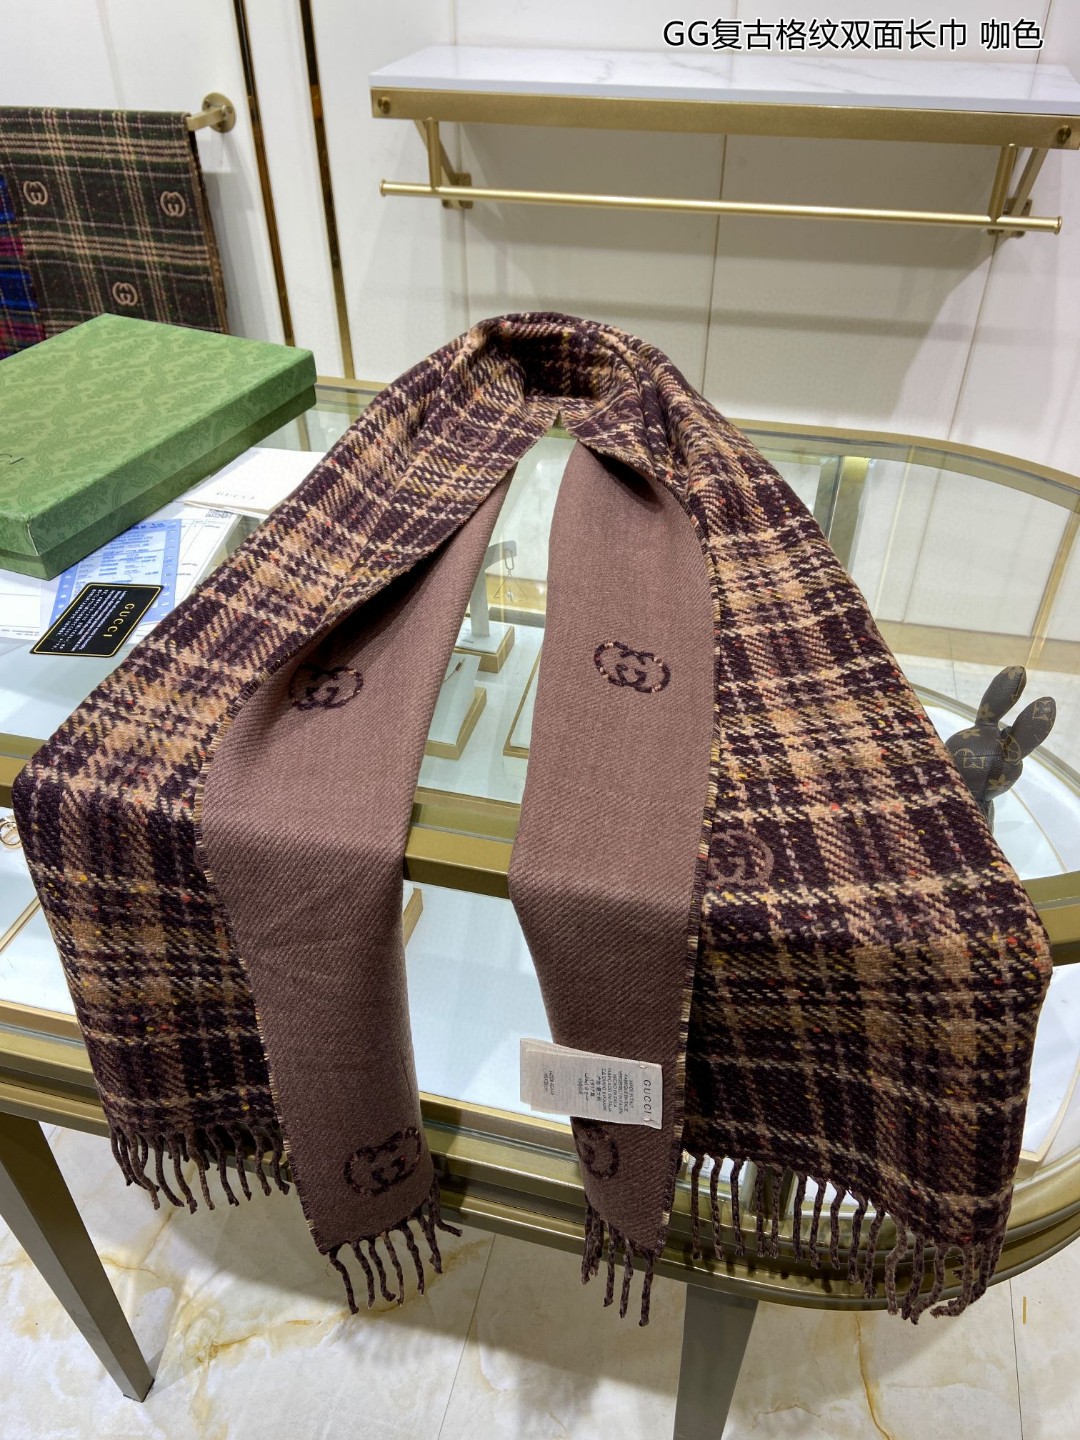 上新ZG同步GG复古格纹双面长巾经典GG图案是品牌在30年代开始使用的标志性元素之一历经近一个世纪的发展